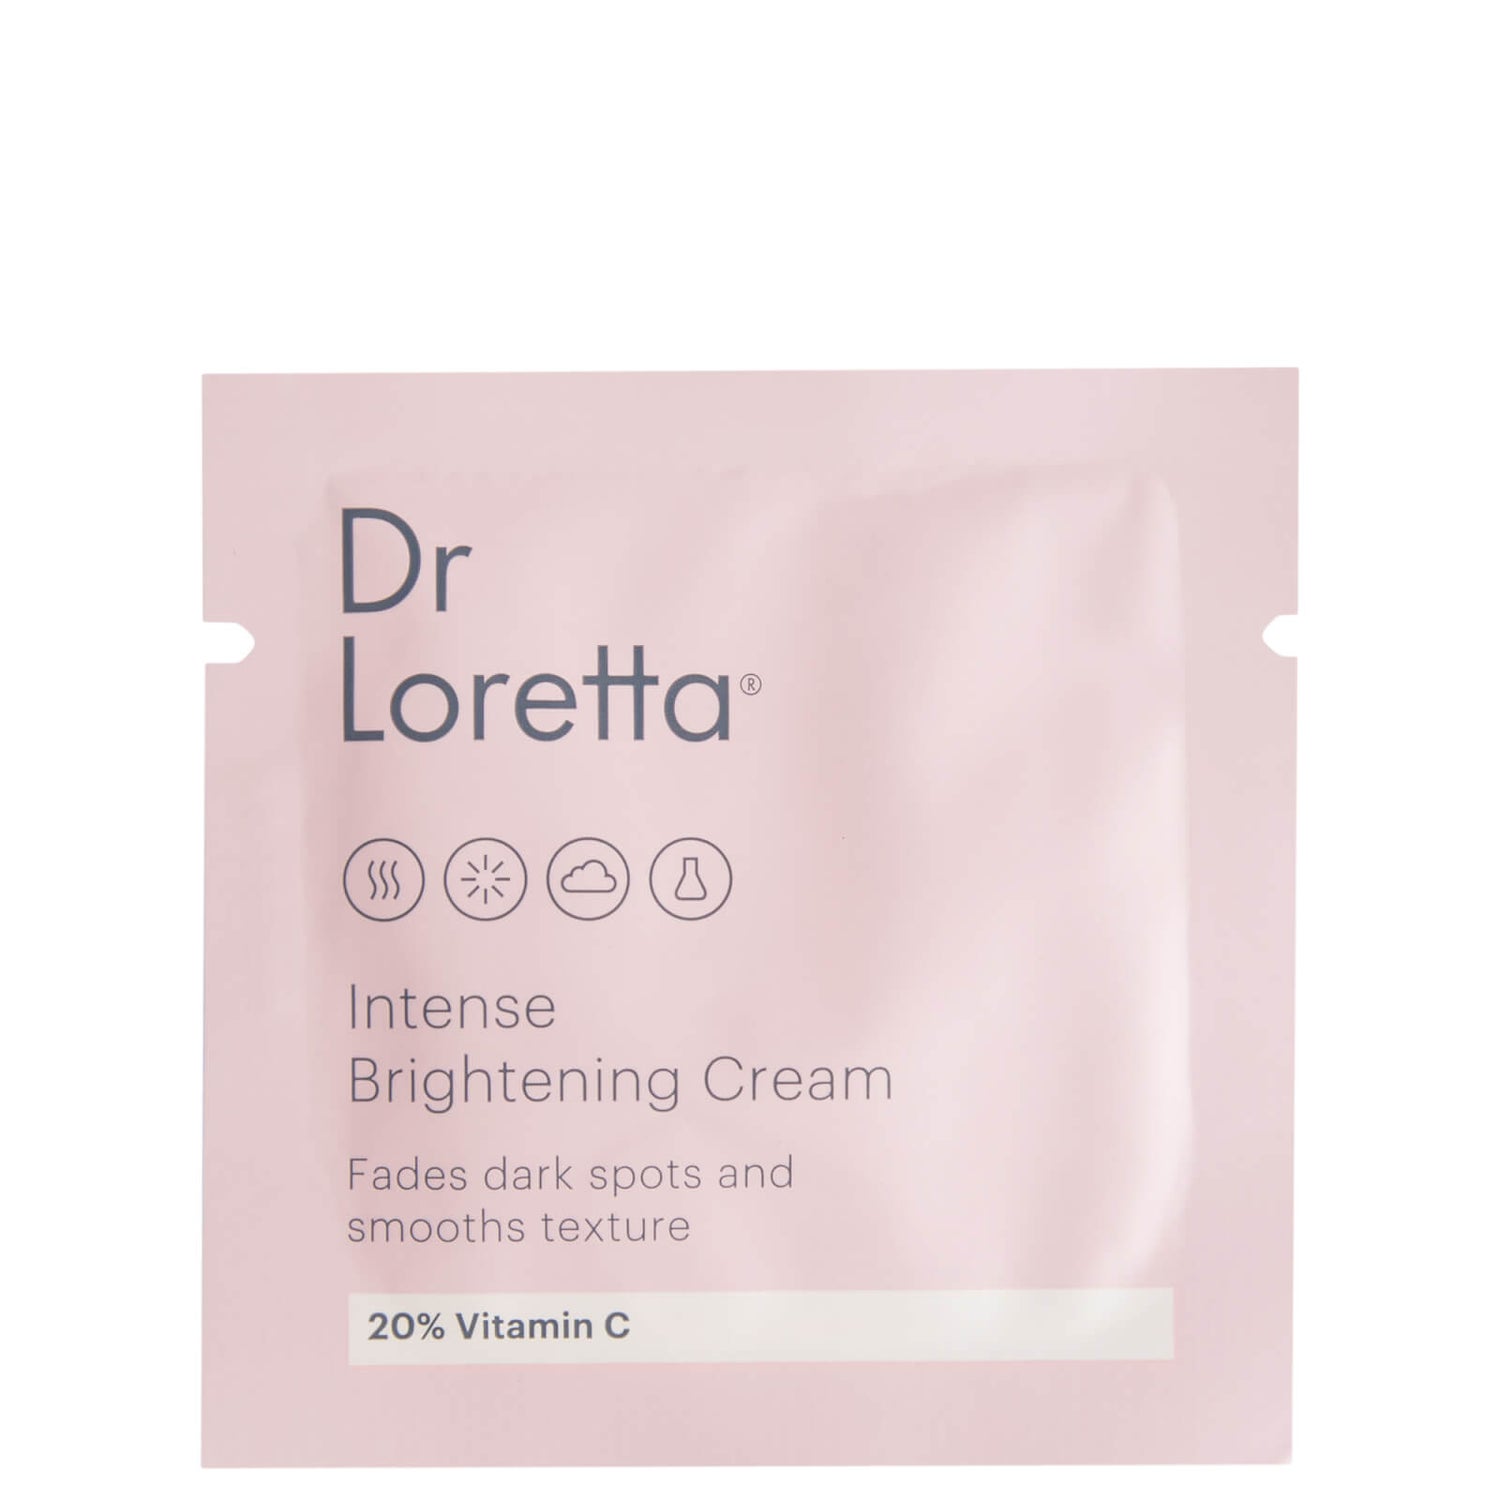 Dr. Loretta Intense Brightening Cream Packette 1.5ml (Worth $2.00)